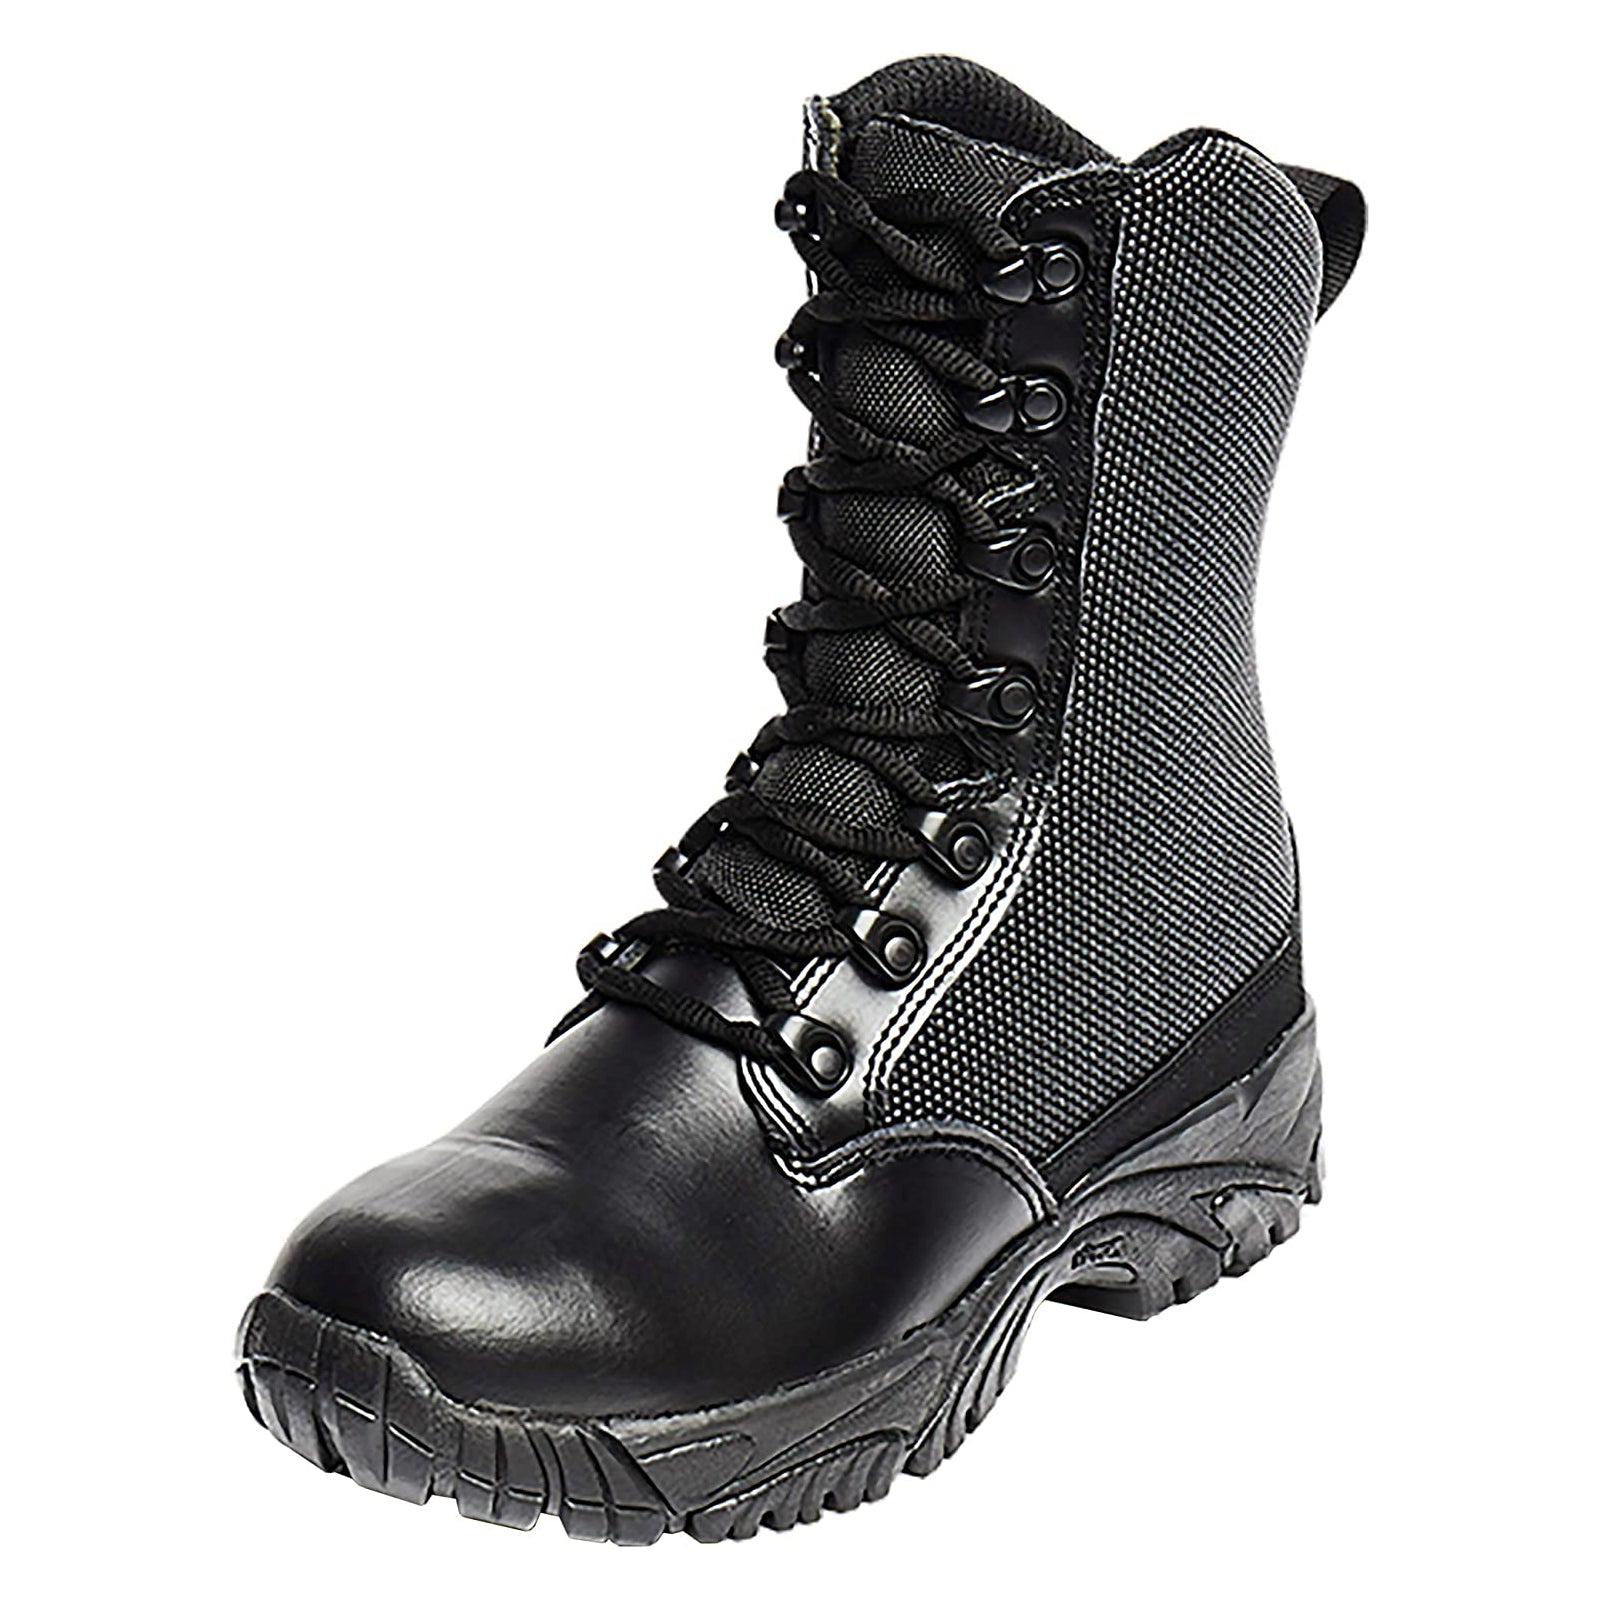 Altai - NZ Super Fabric Tactical Boots 8" (NO WARRANTY)